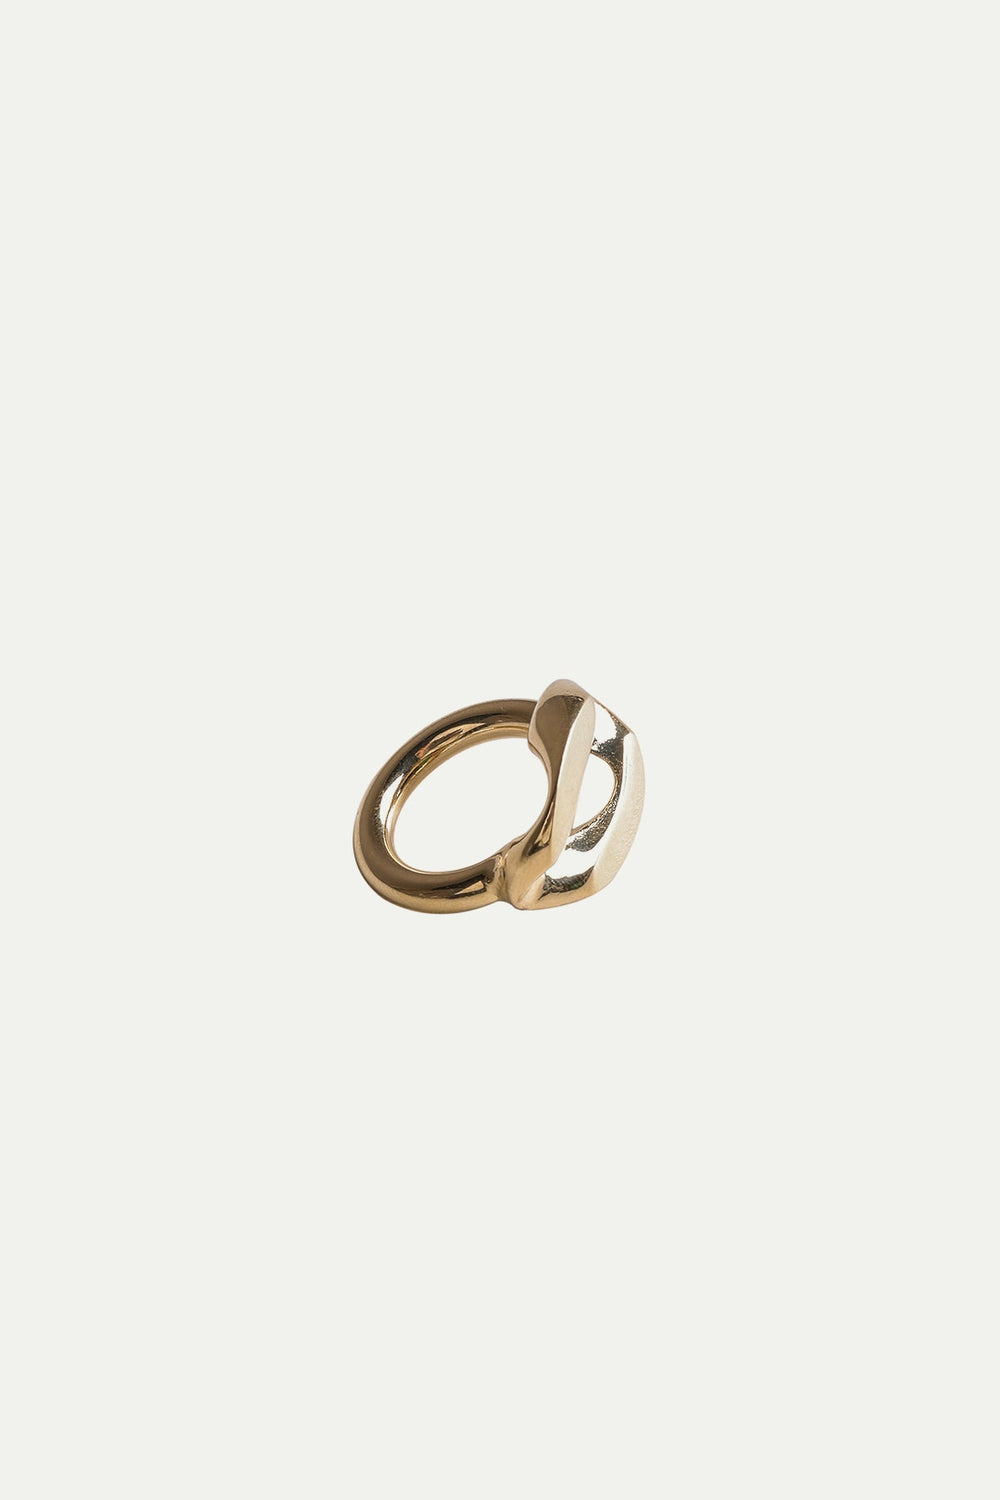 טבעת גורמט בצבע זהב - Noritamy